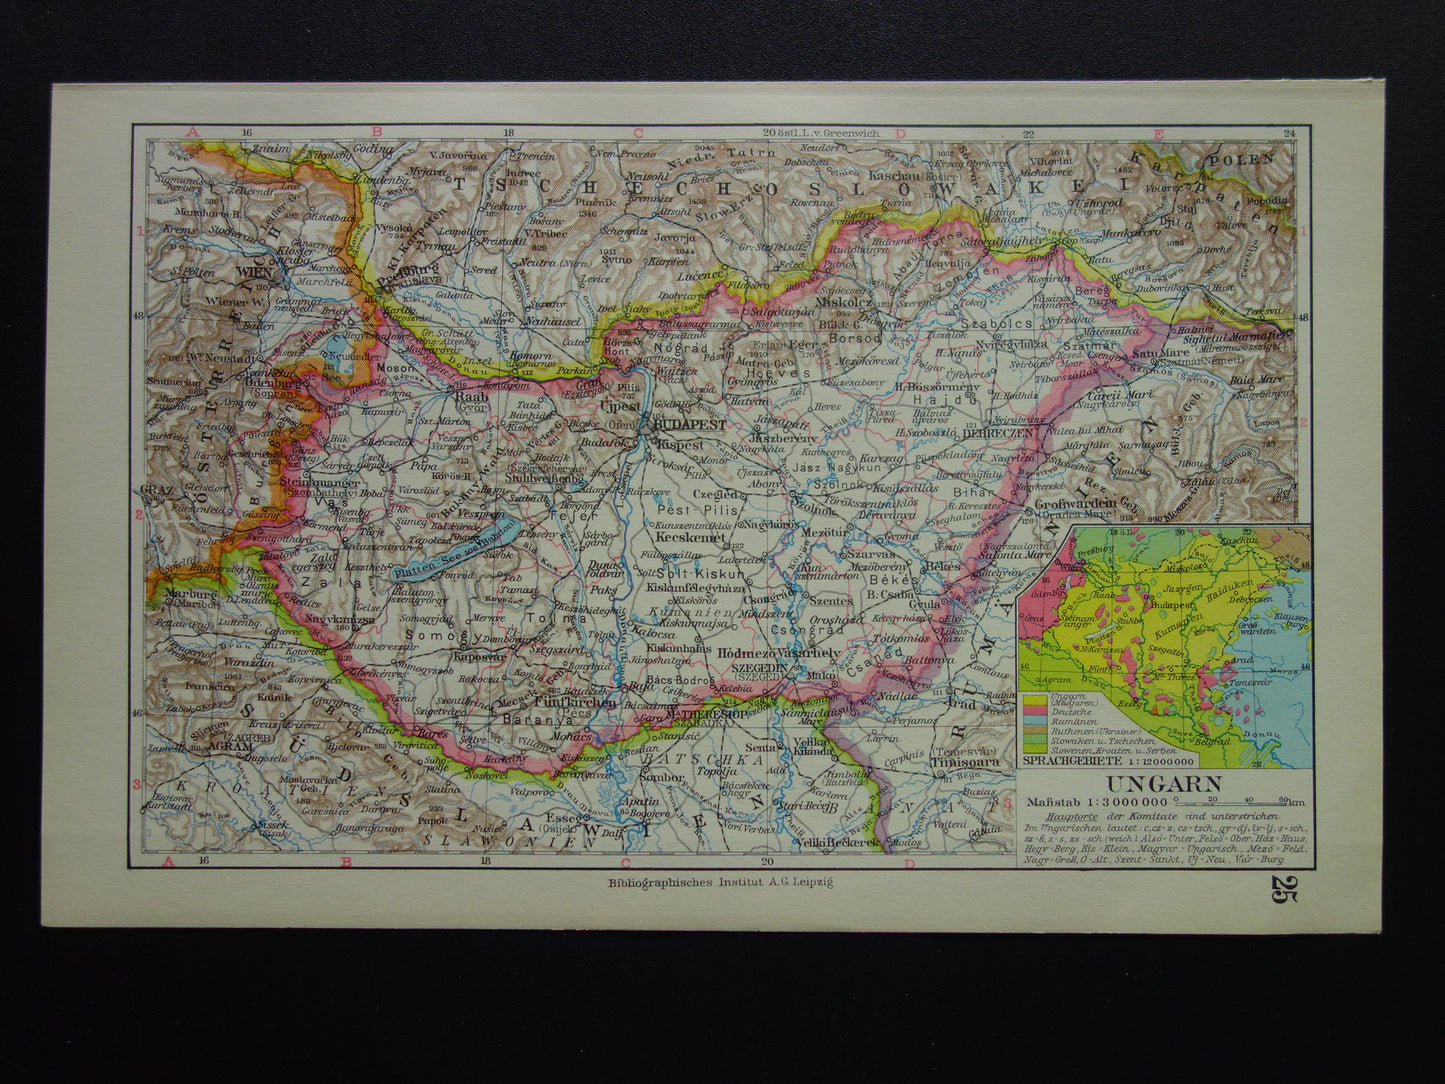 HONGARIJE oude landkaart van Hongarije 1931 originele vintage Duitse kaart Budapest inzetkaart gesproken talen